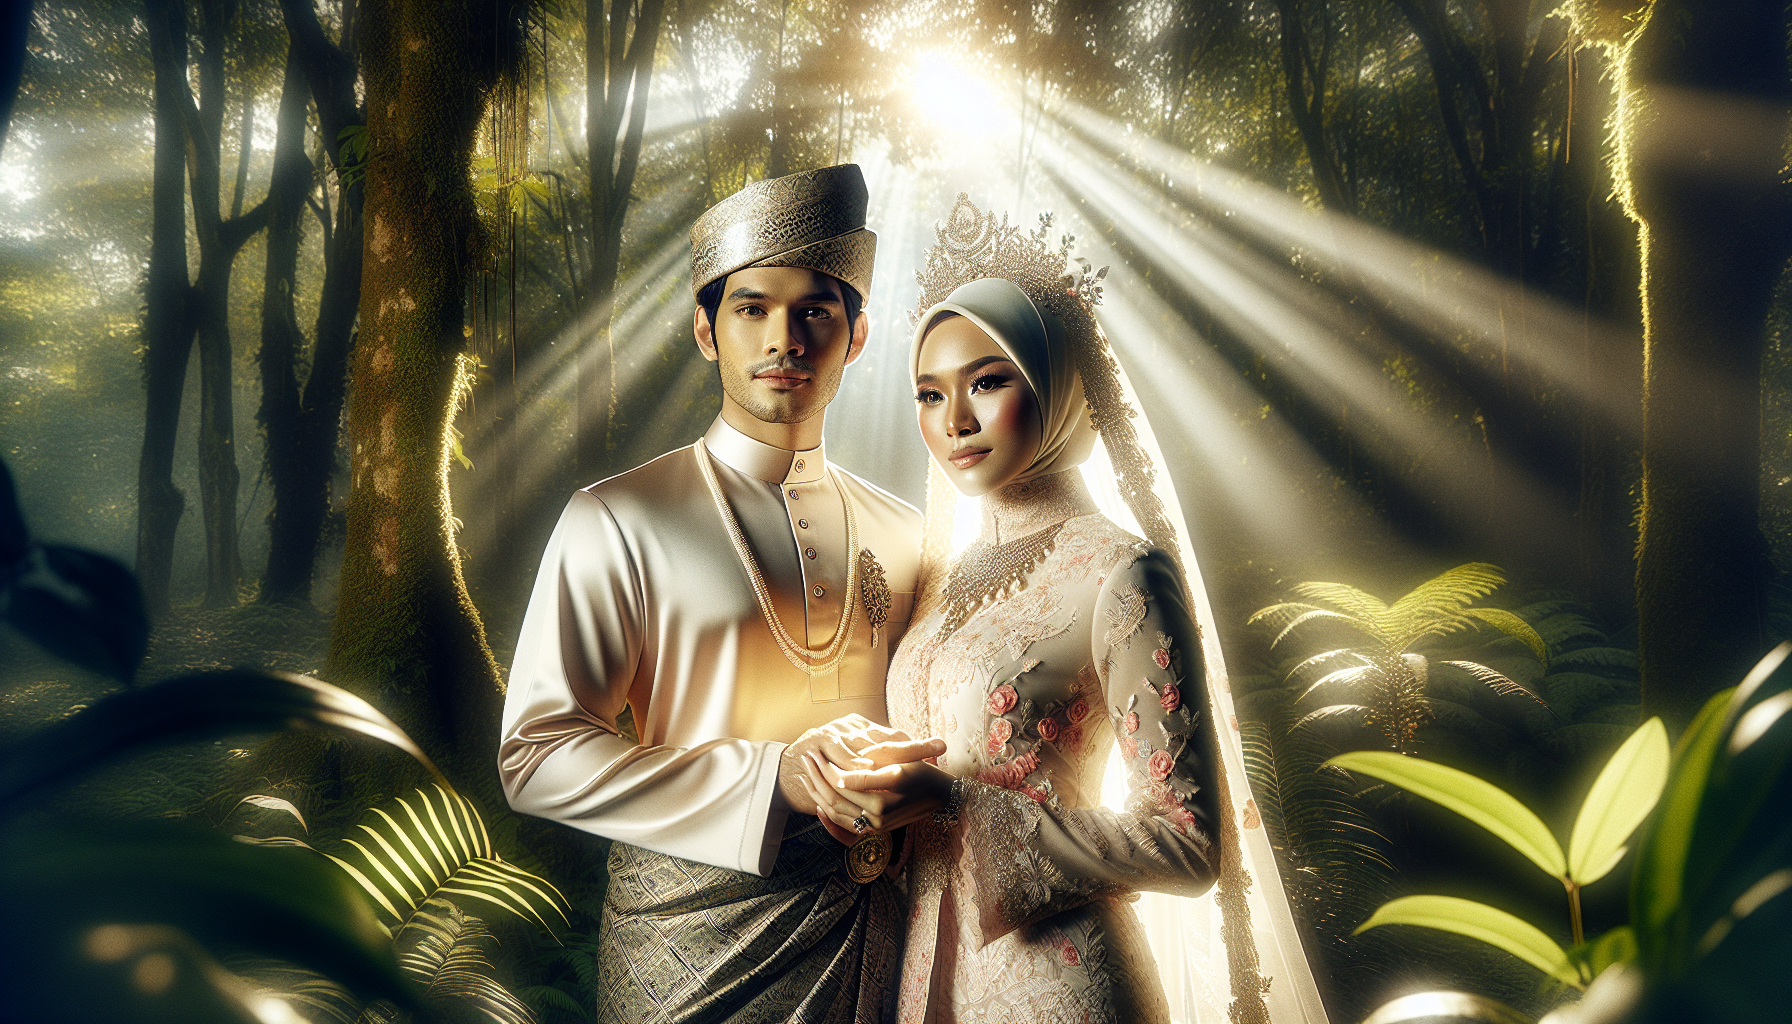 découvrez l'incroyable histoire de ce couple malaisien décédé dans un accident de voiture. ont-ils organisé un mariage fantôme ?